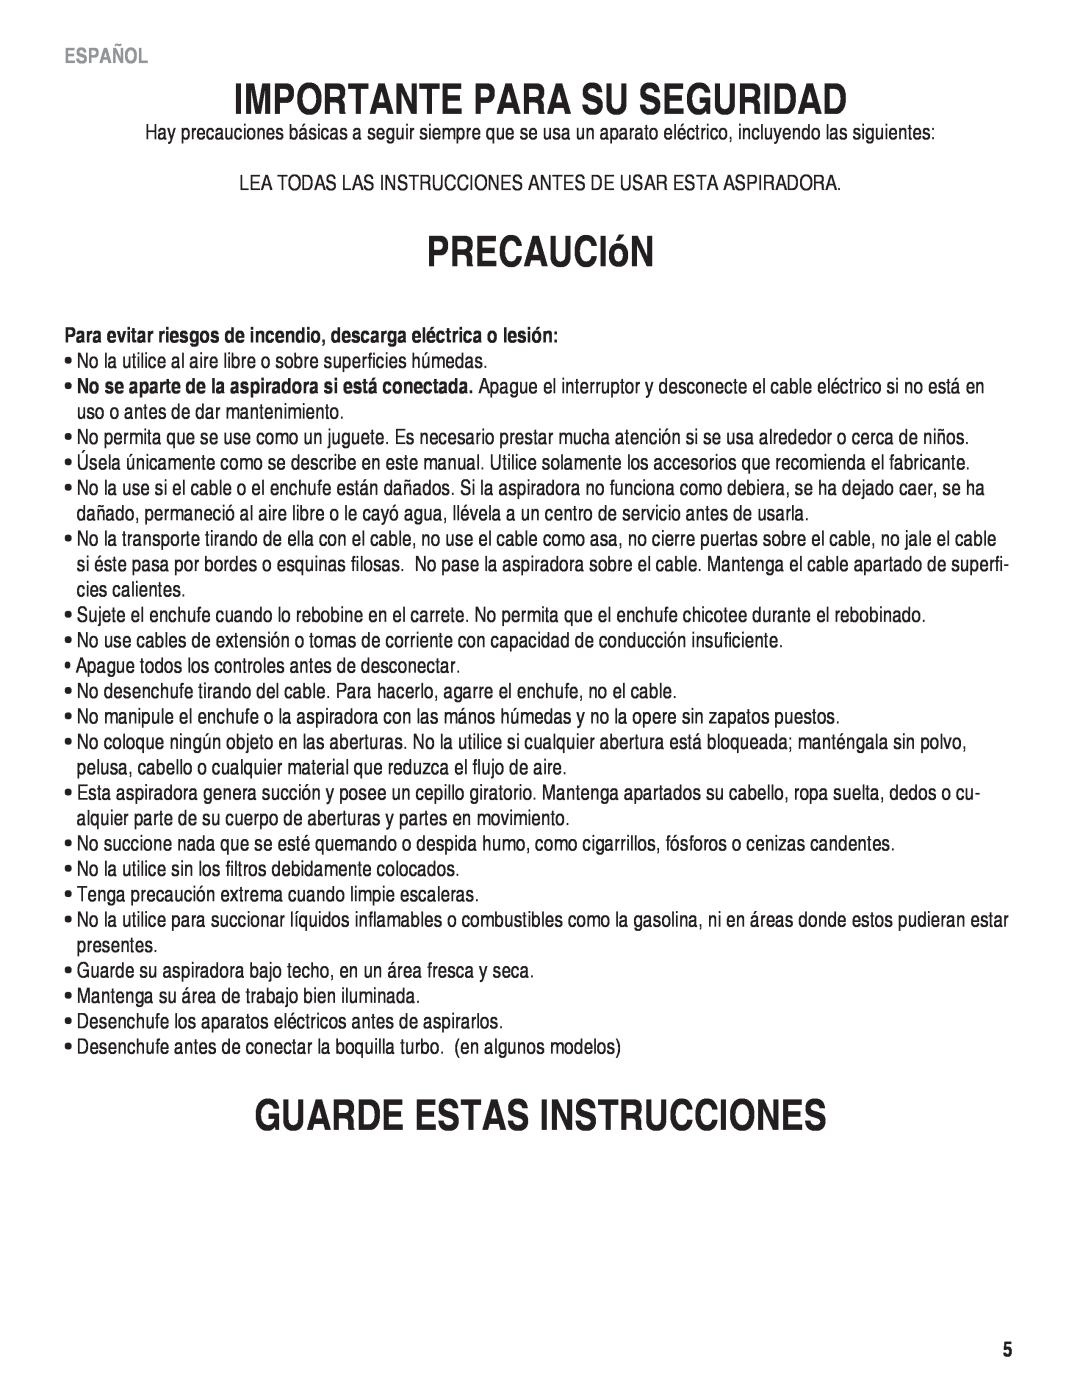 Eureka! Tents 980 manual Importante Para Su Seguridad, PRECAUCIóN, Guarde Estas Instrucciones, Español 